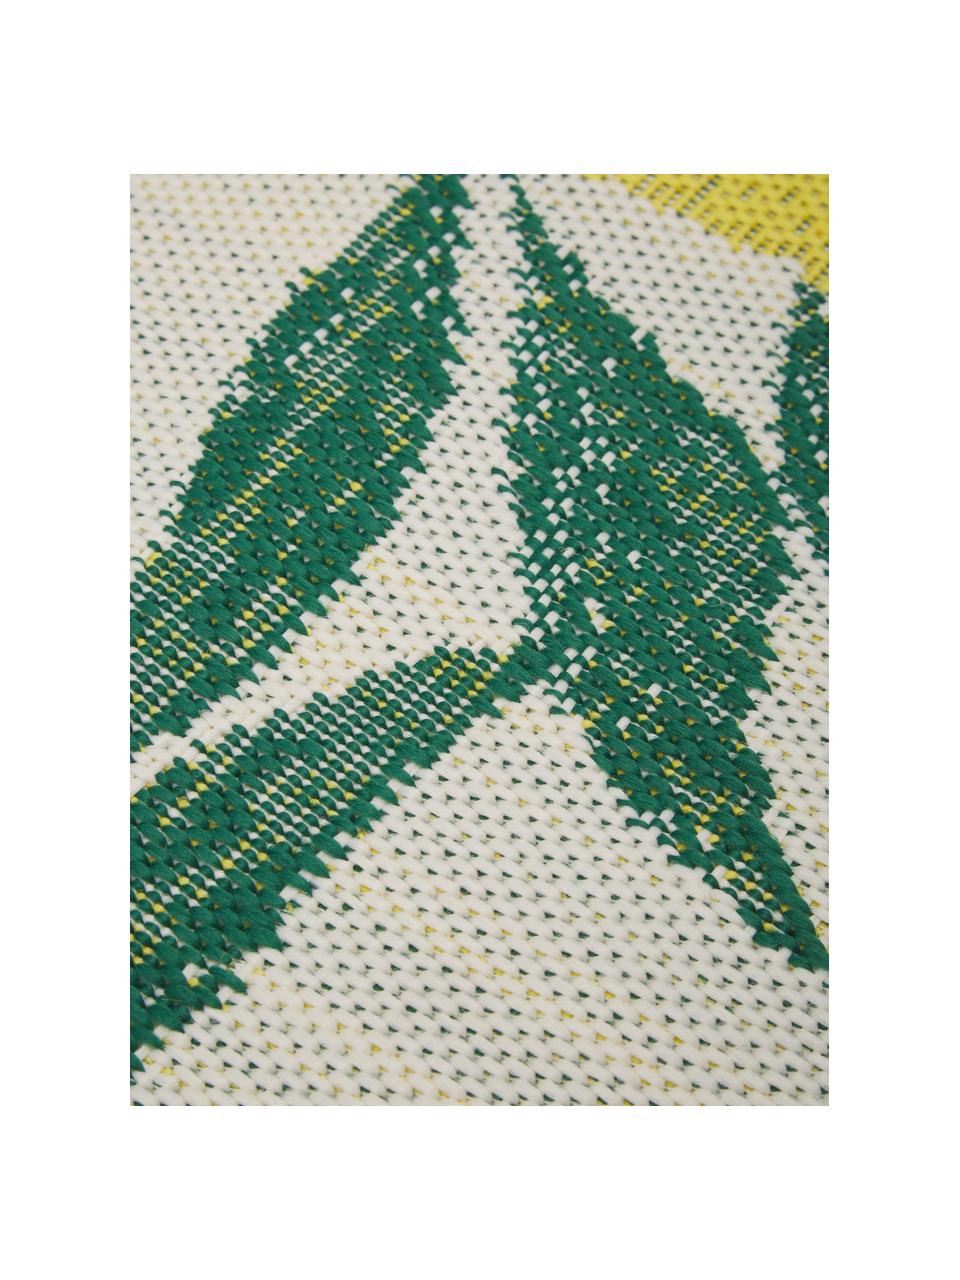 Vnitřní a venkovní koberec s potiskem s citróny Limonia, 86 % polypropylen, 14 % polyester, Bílá, žlutá, zelená, Ø 140 cm (velikost M)